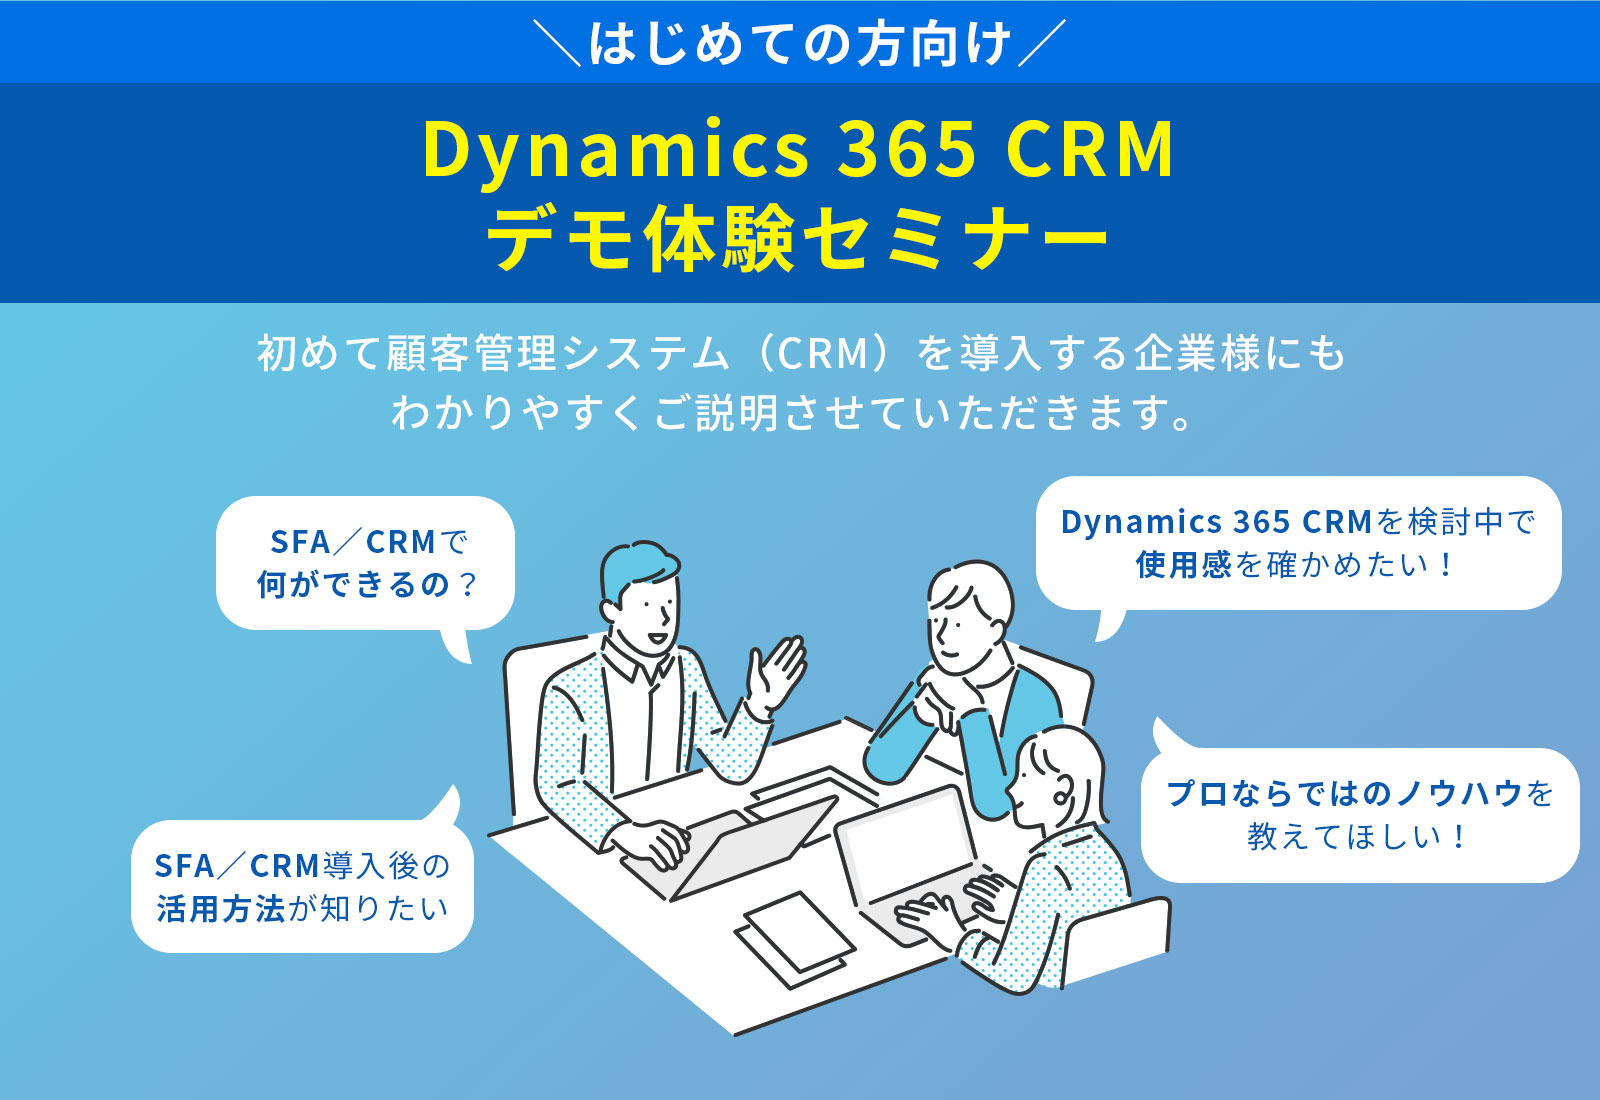 【はじめての方向け】Dynamics 365 CRMデモ体験セミナー